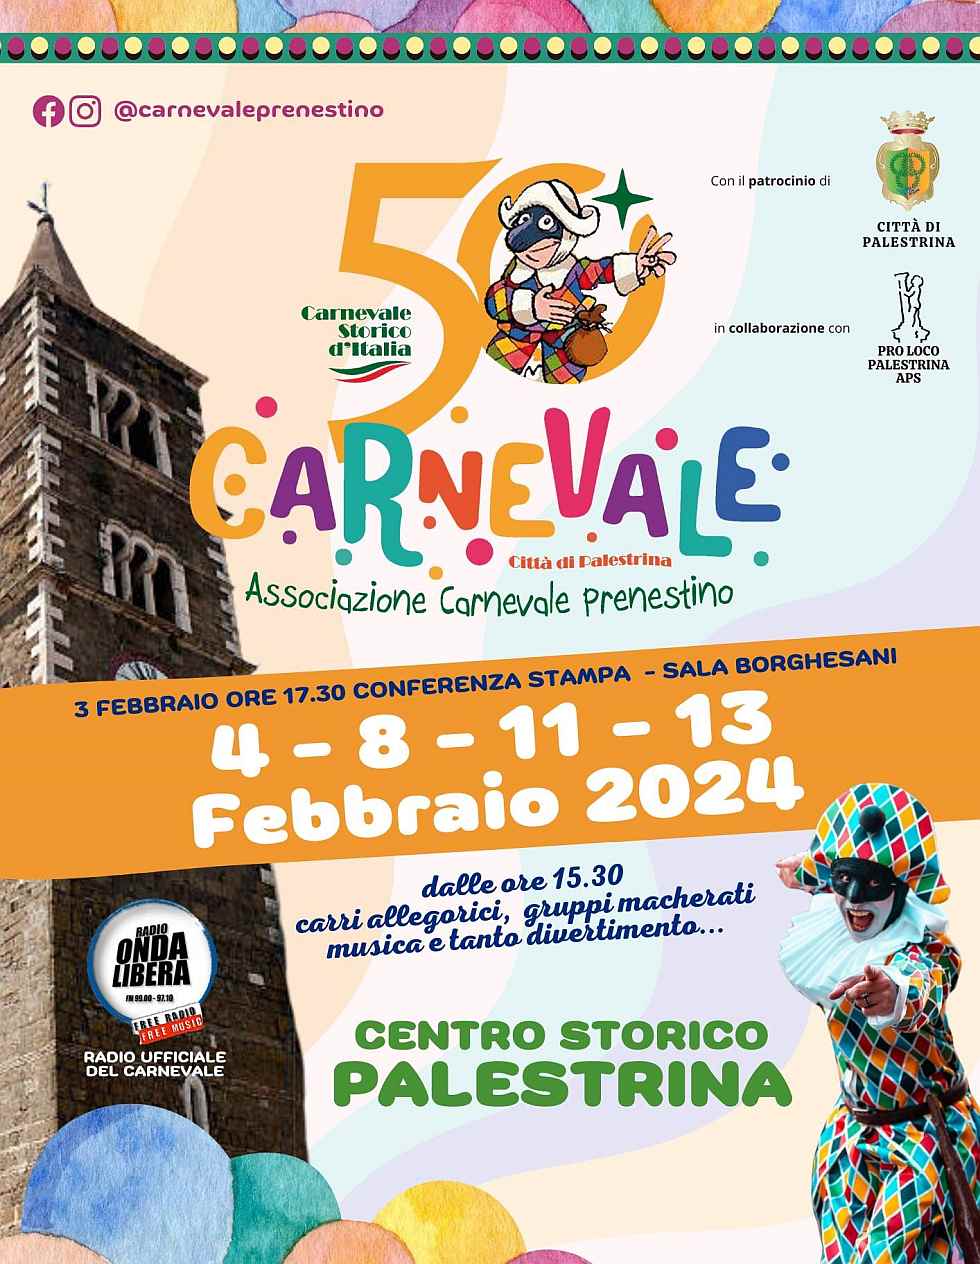 Palestrina (RM)
"Carnevale Prenestino"
4-5-16-18-19-21 